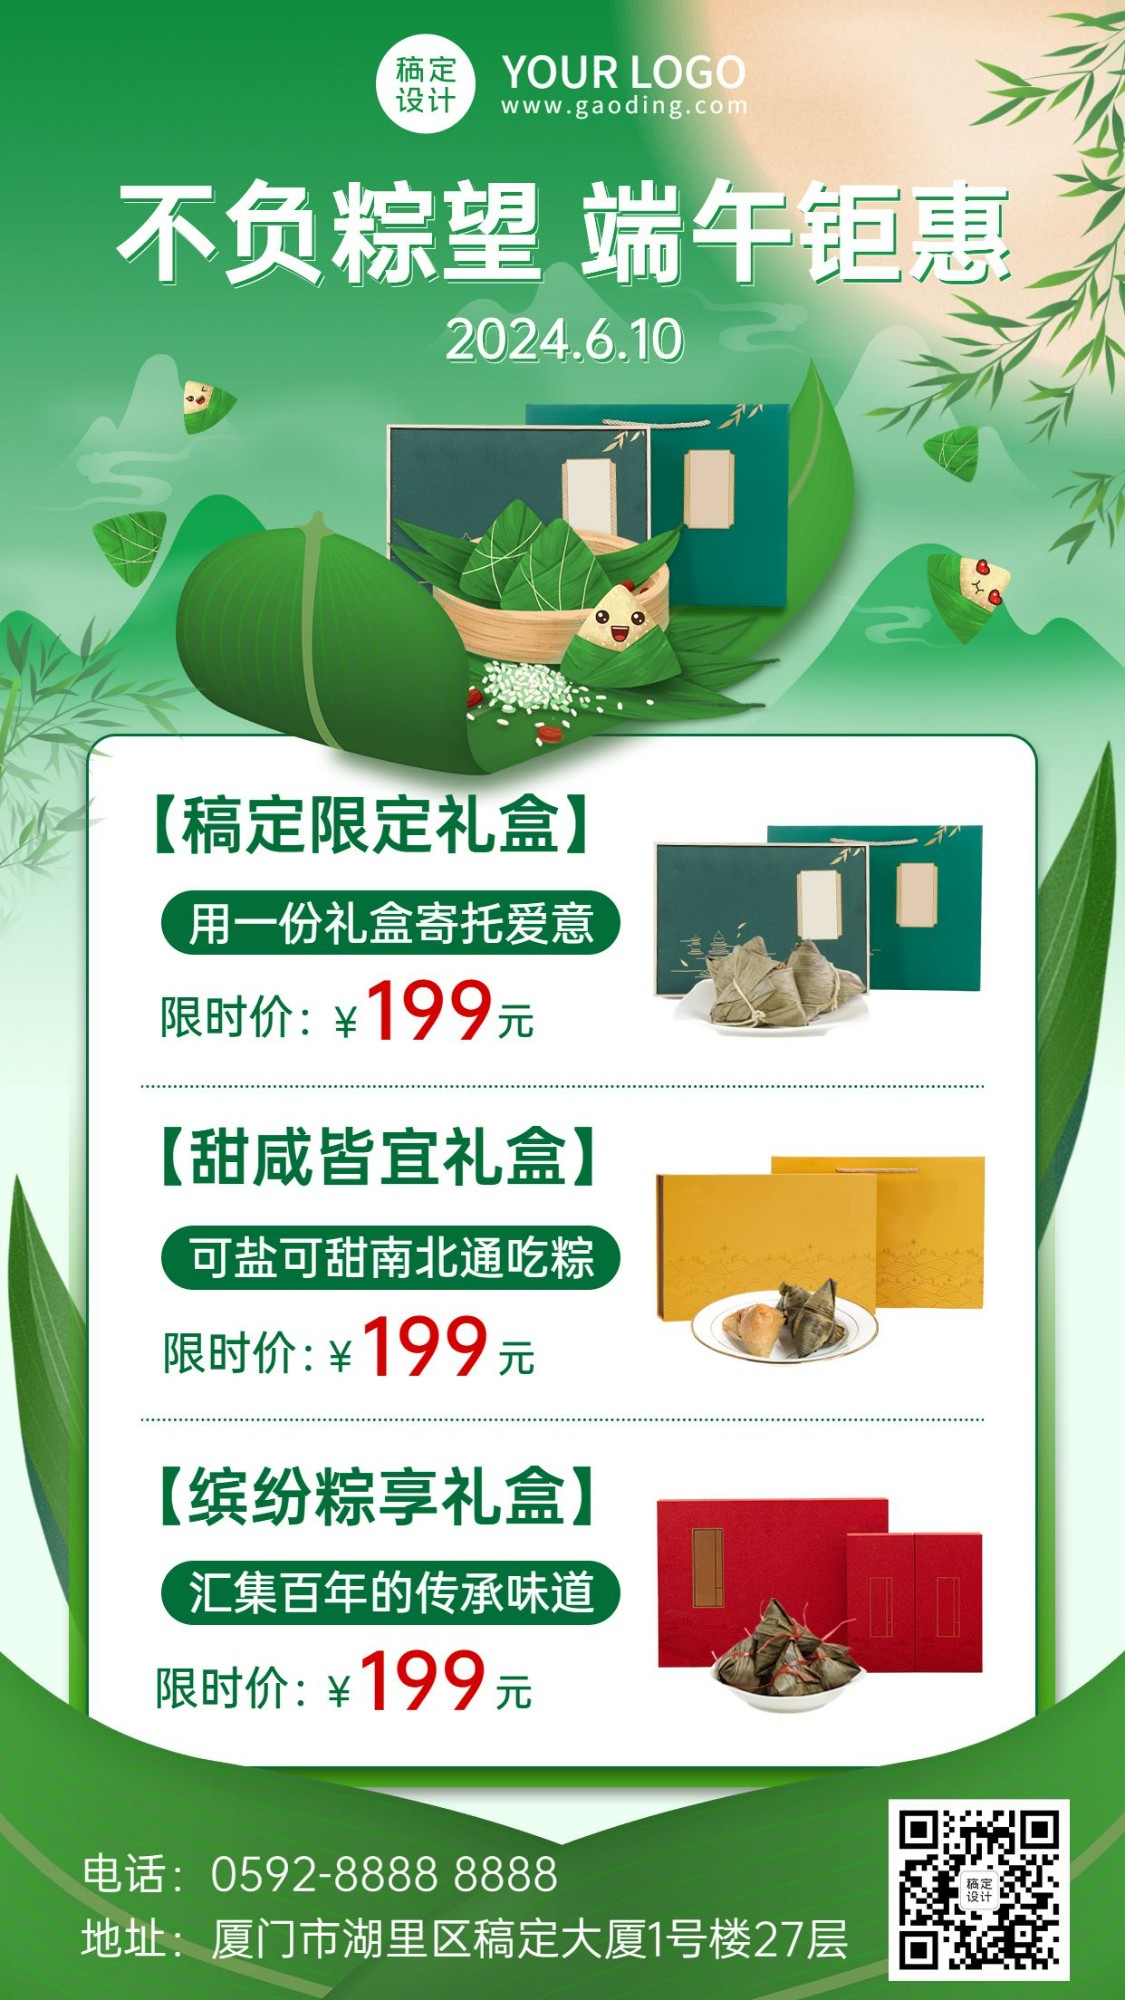 端午节粽子礼盒节日营销插画手机海报